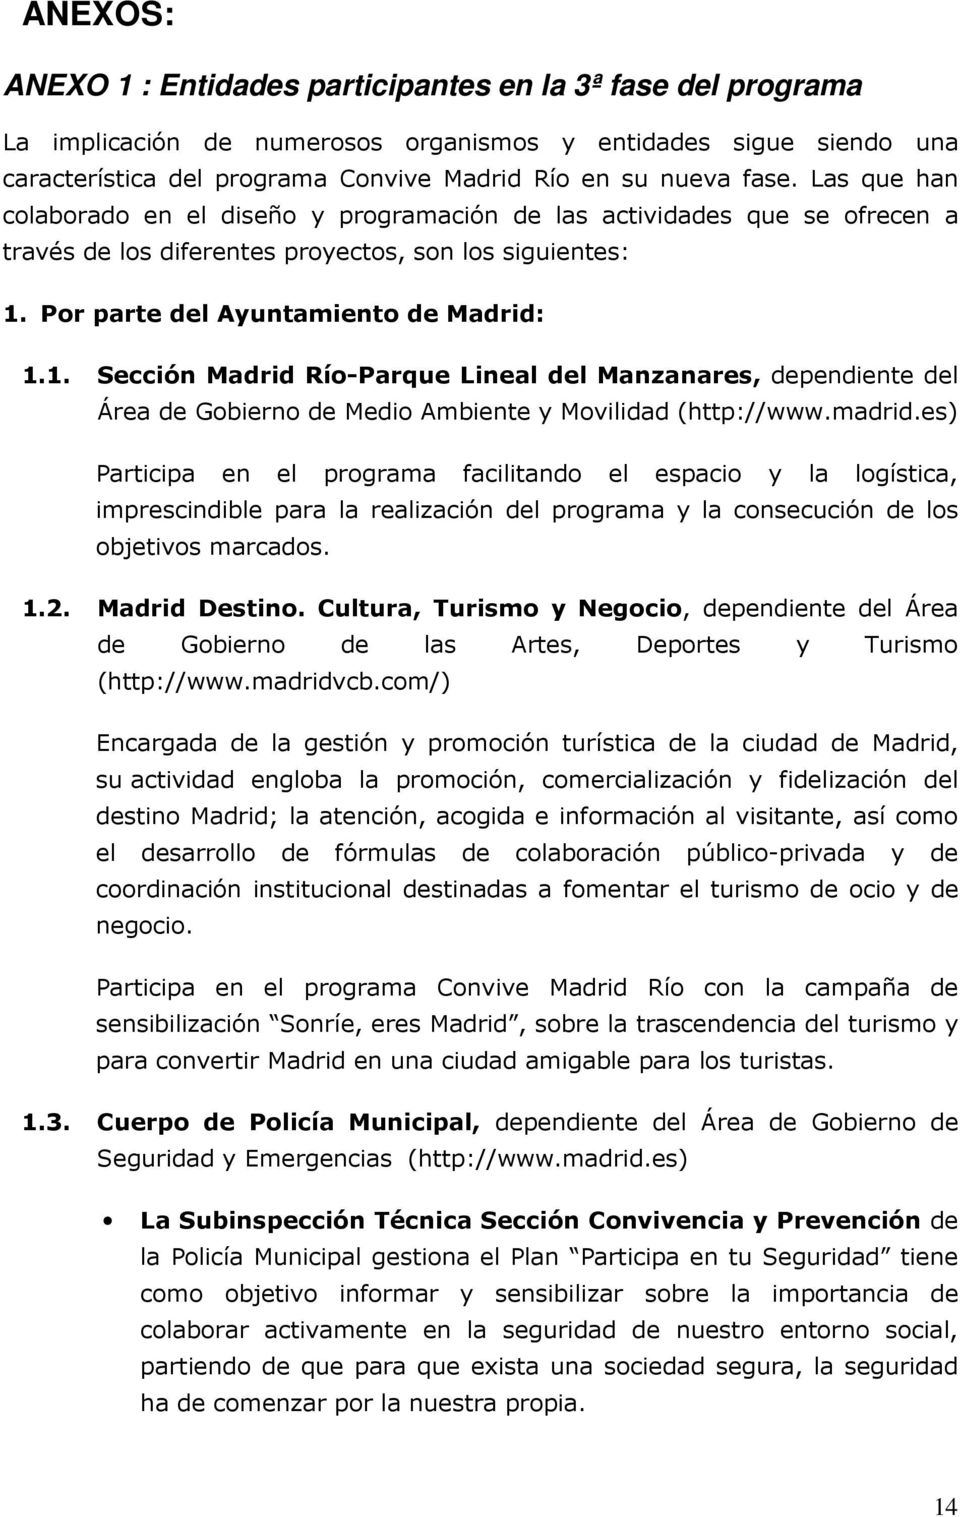 Por parte del Ayuntamiento de Madrid: 1.1. Sección Madrid Río-Parque Lineal del Manzanares, dependiente del Área de Gobierno de Medio Ambiente y Movilidad (http://www.madrid.